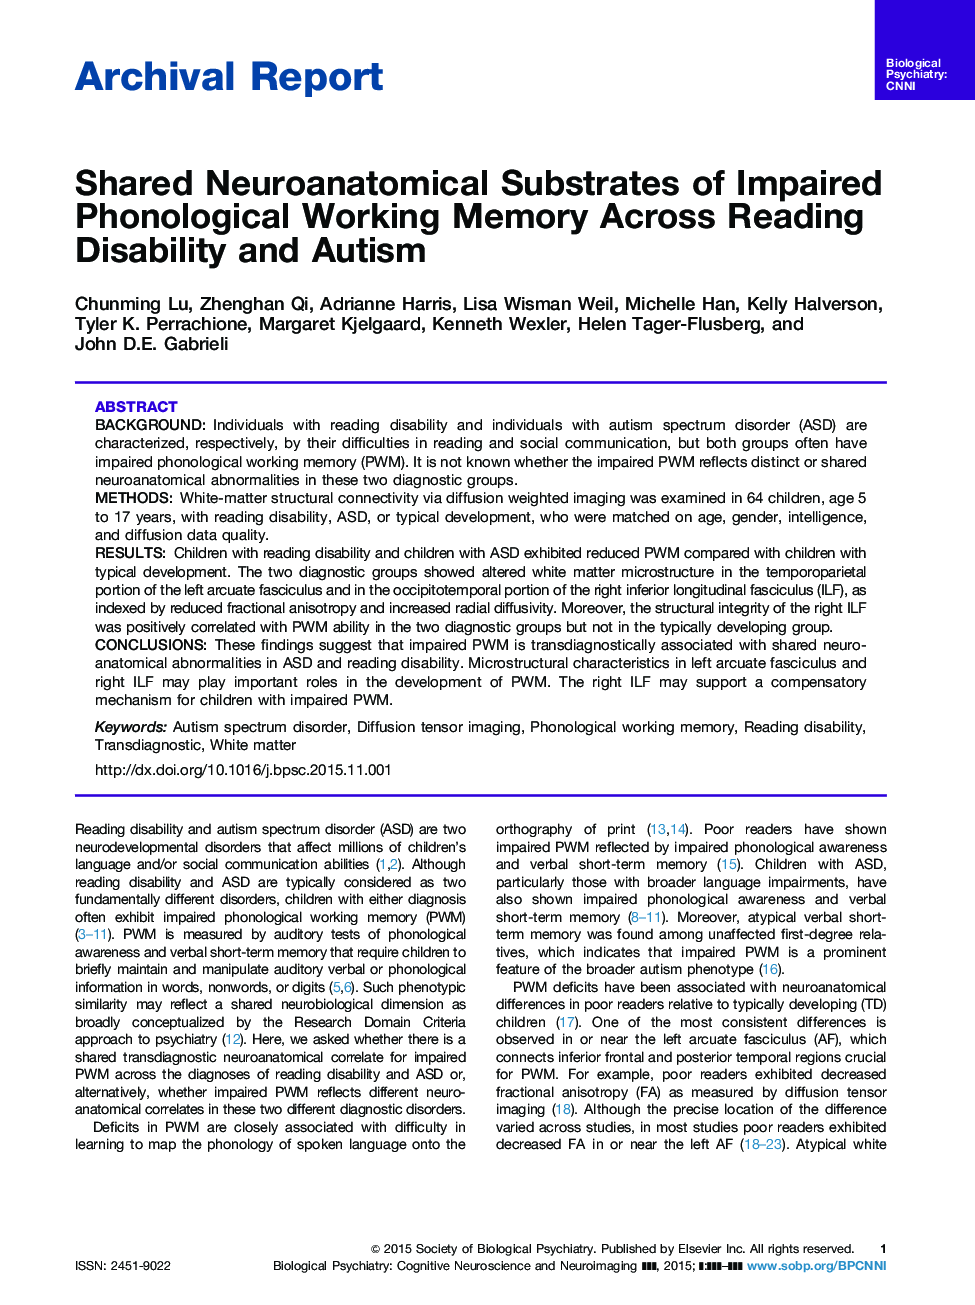 توزیع زیر ساختارهای مغز و اعصاب ناشی از اختلال حافظه کارآفرینی در سراسر خواندن معلولیت و اوتیسم 